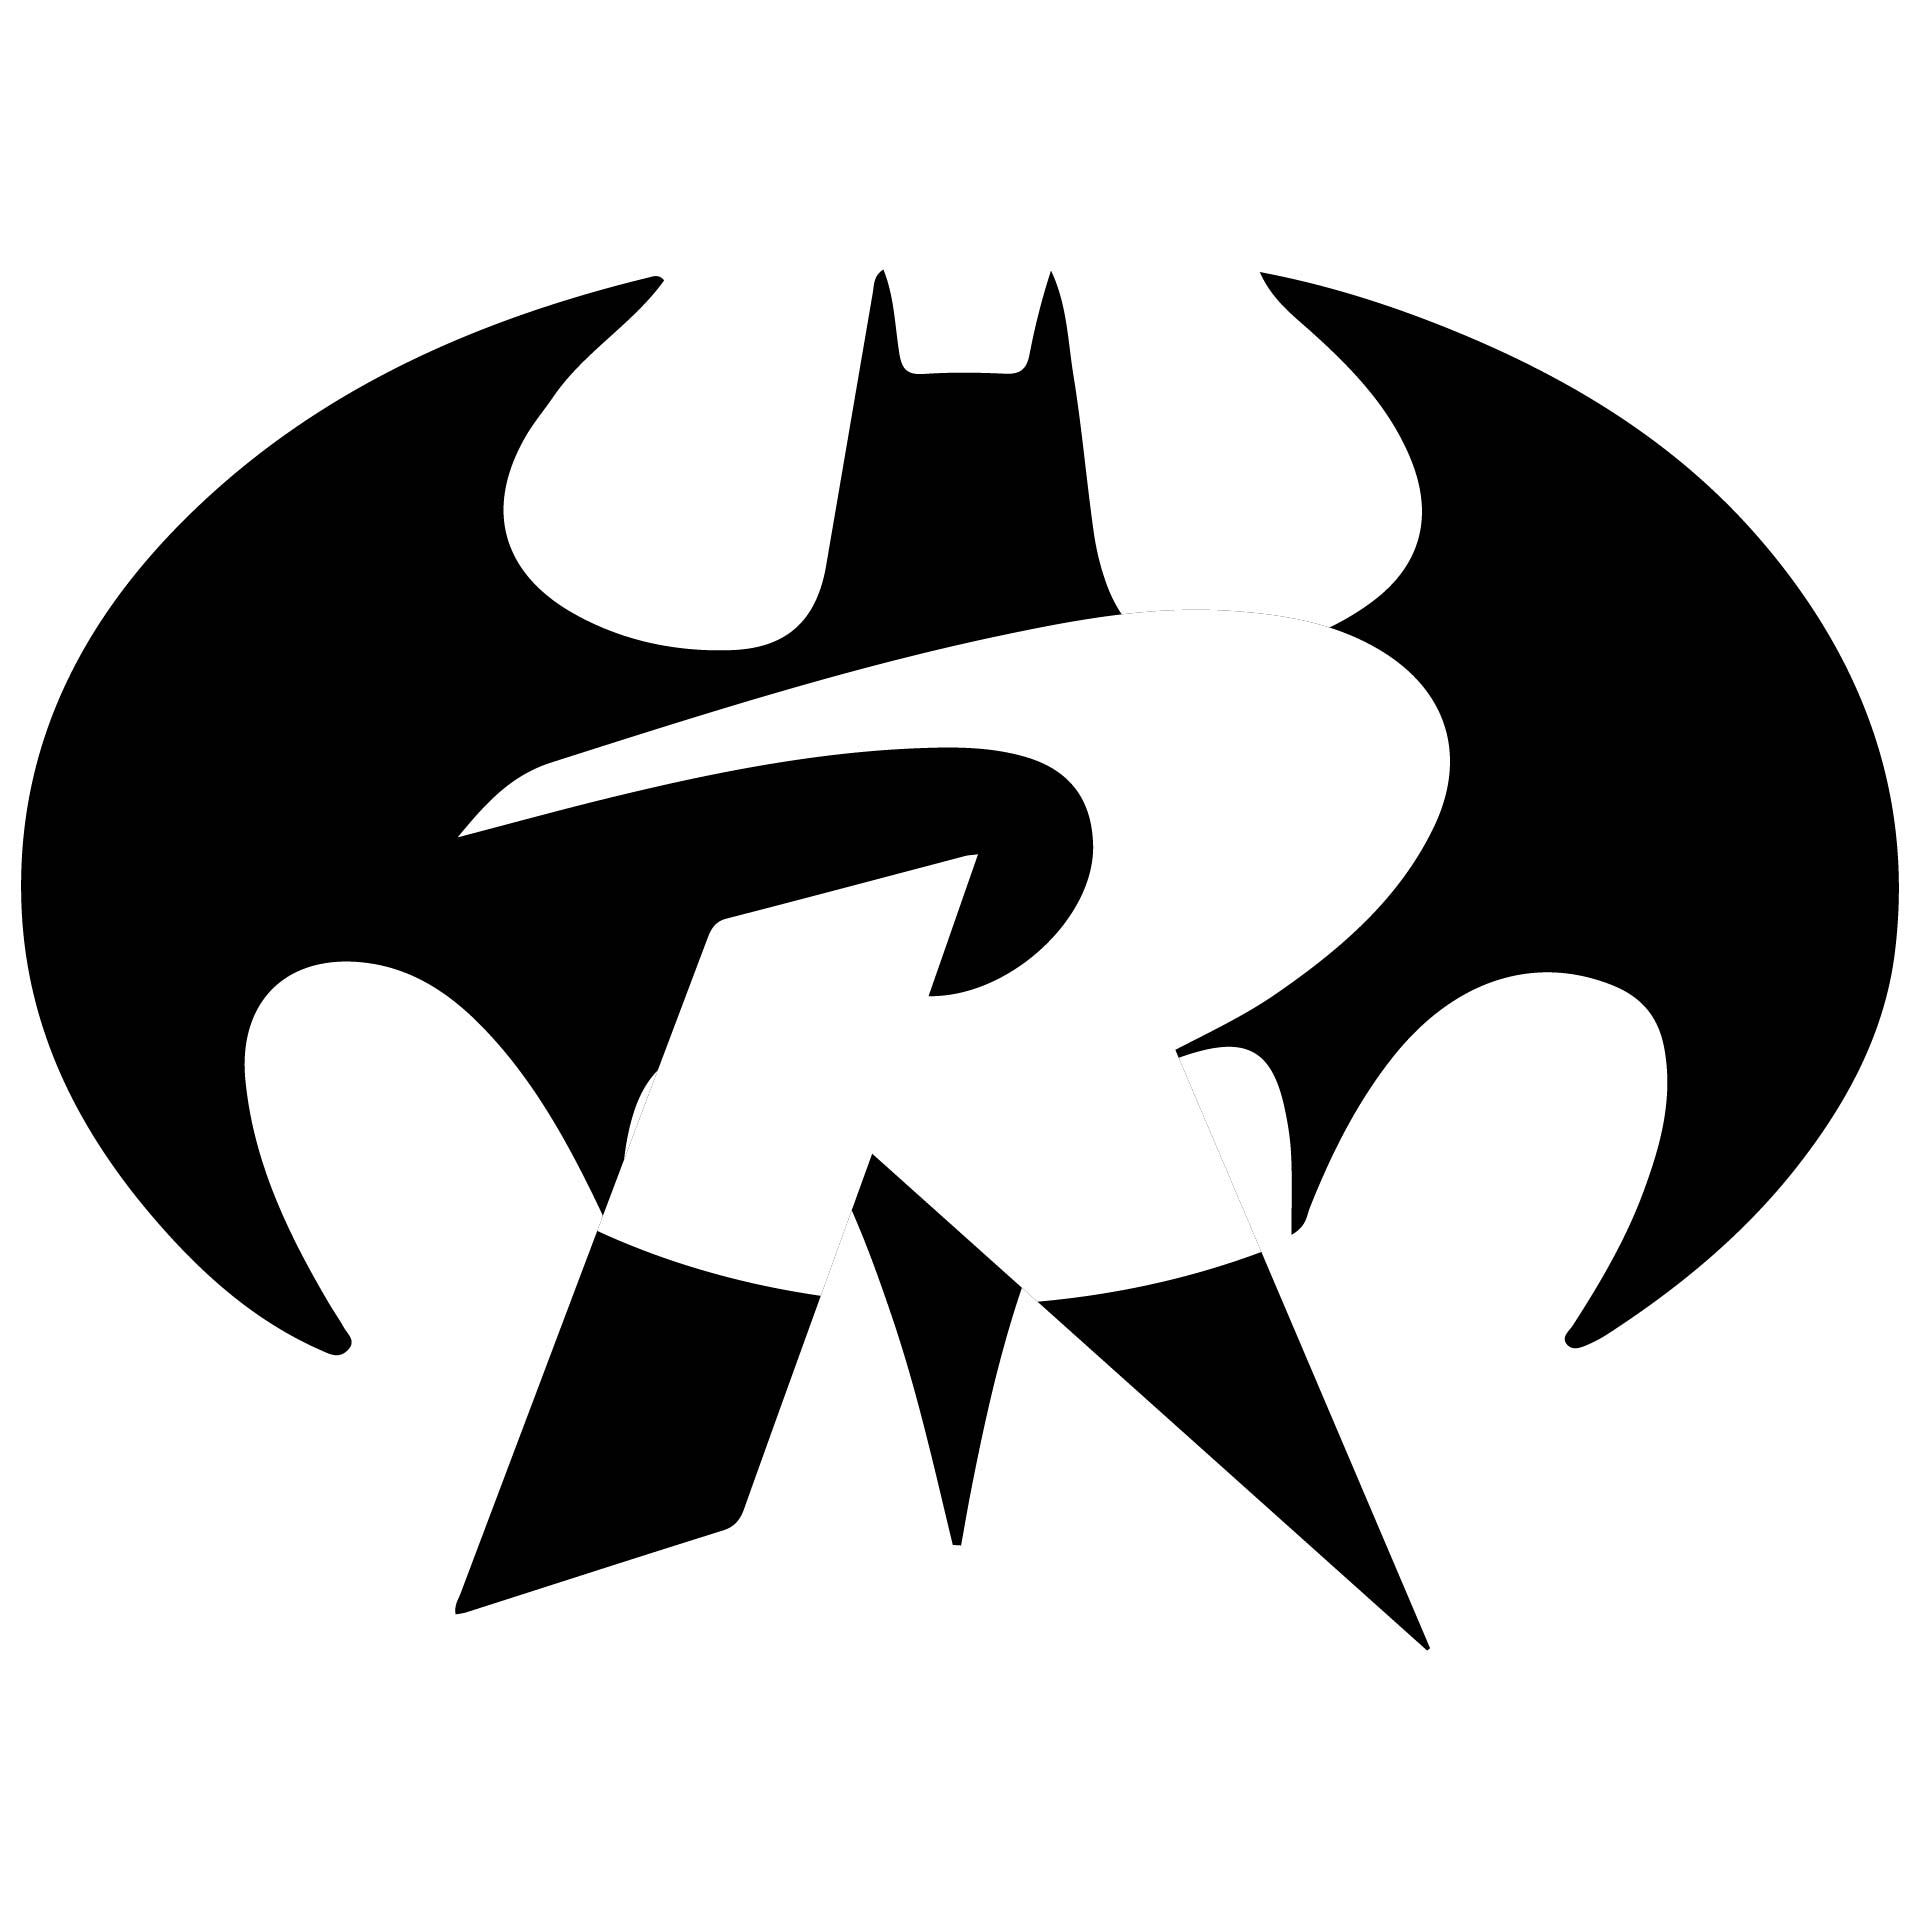 Batman and Robin Symbols Stencils